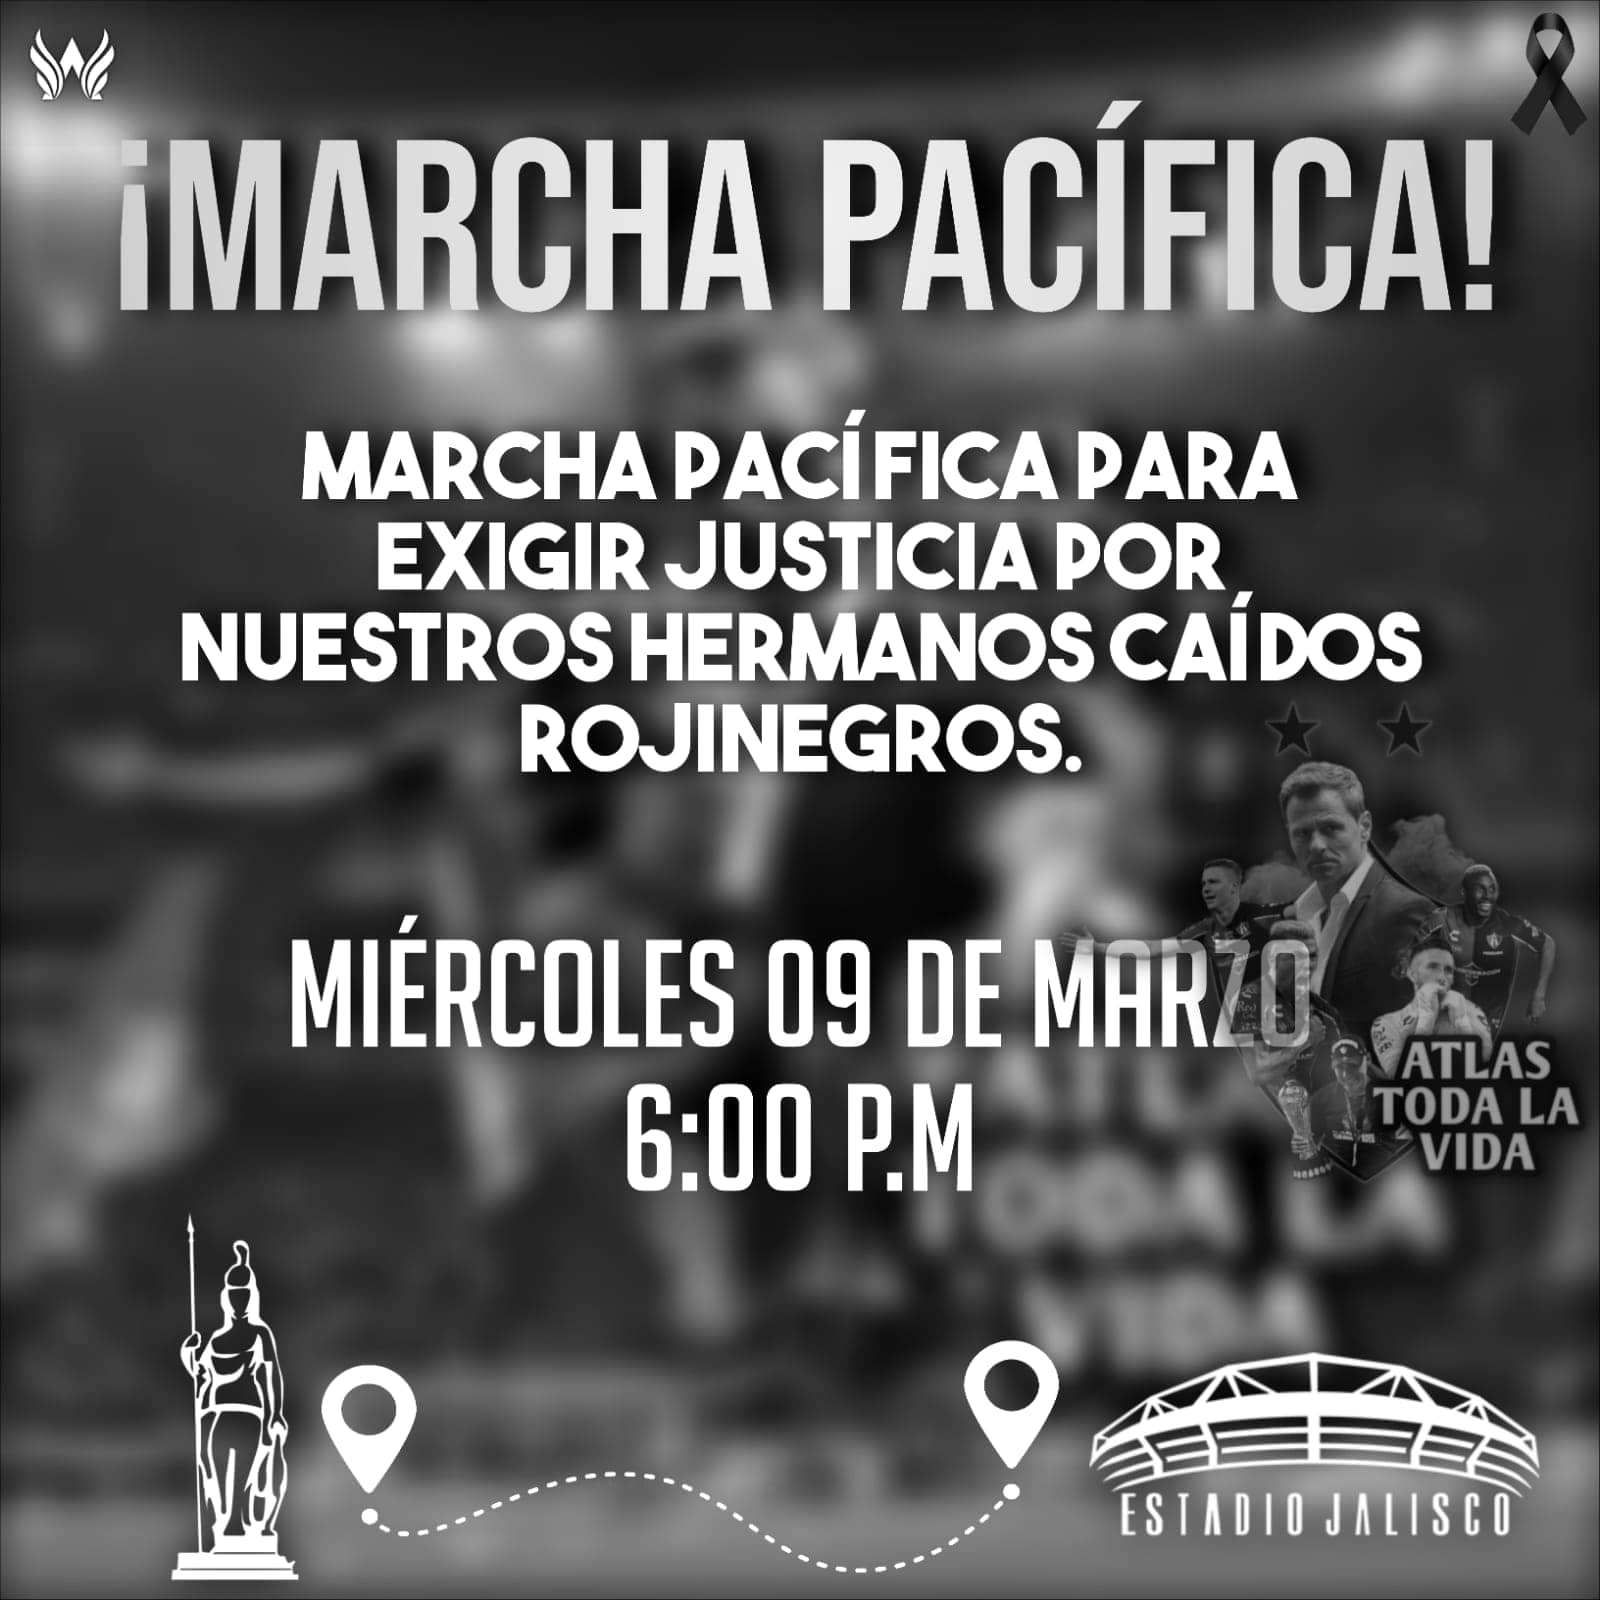 La marcha será encabezada por los aficionados del Atlas en el estadio de Guadalajara | Foto: Fb Soy Atlas 